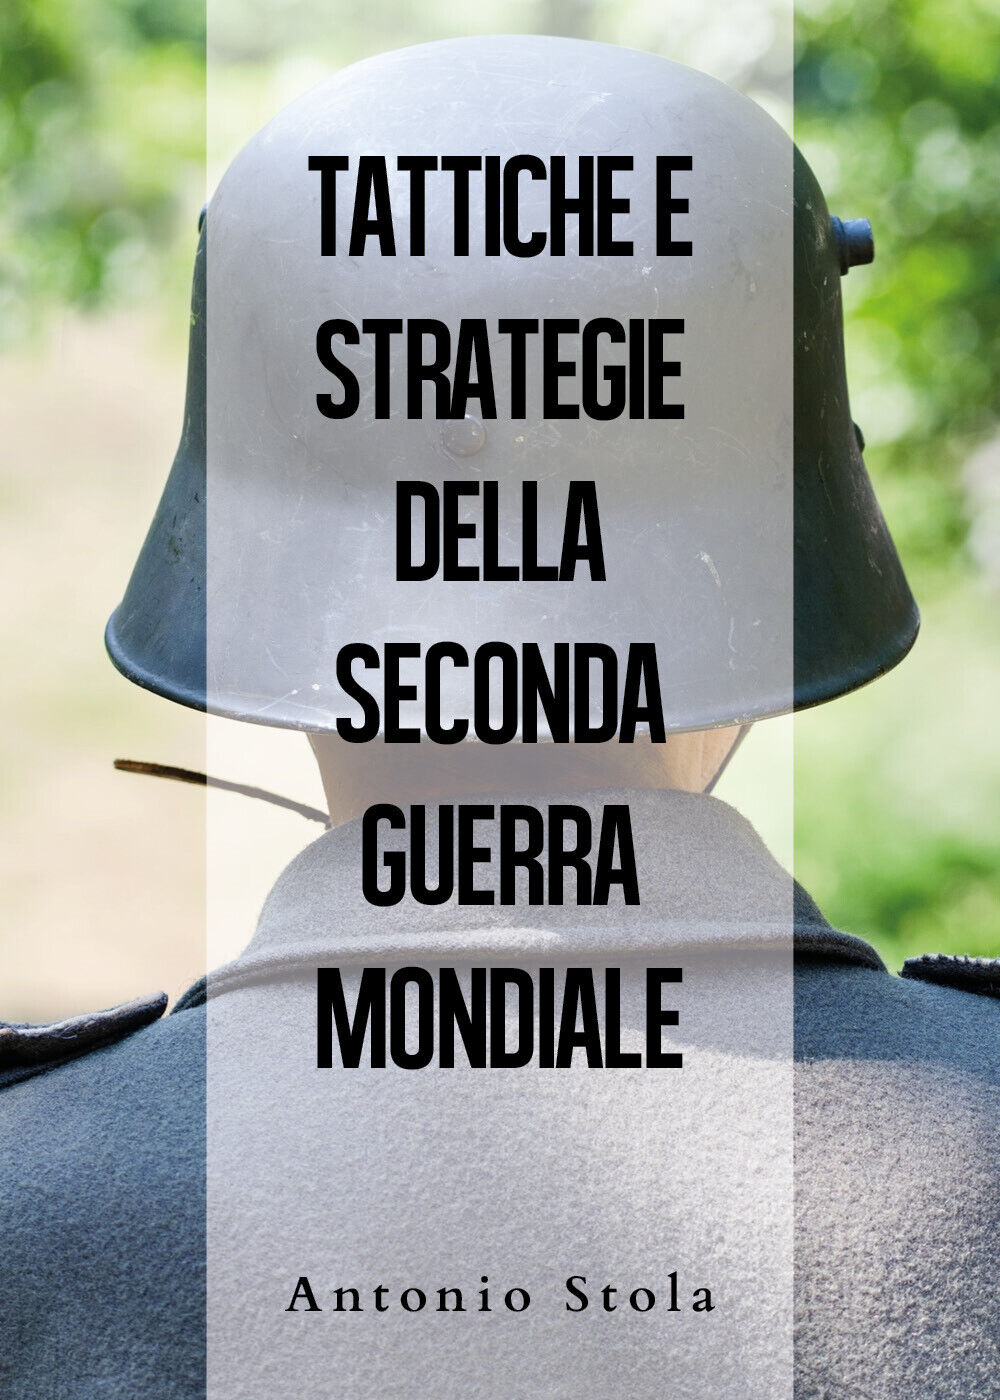 Tattiche e strategie della seconda guerra mondiale - Antonio Stola,  2019 -  You